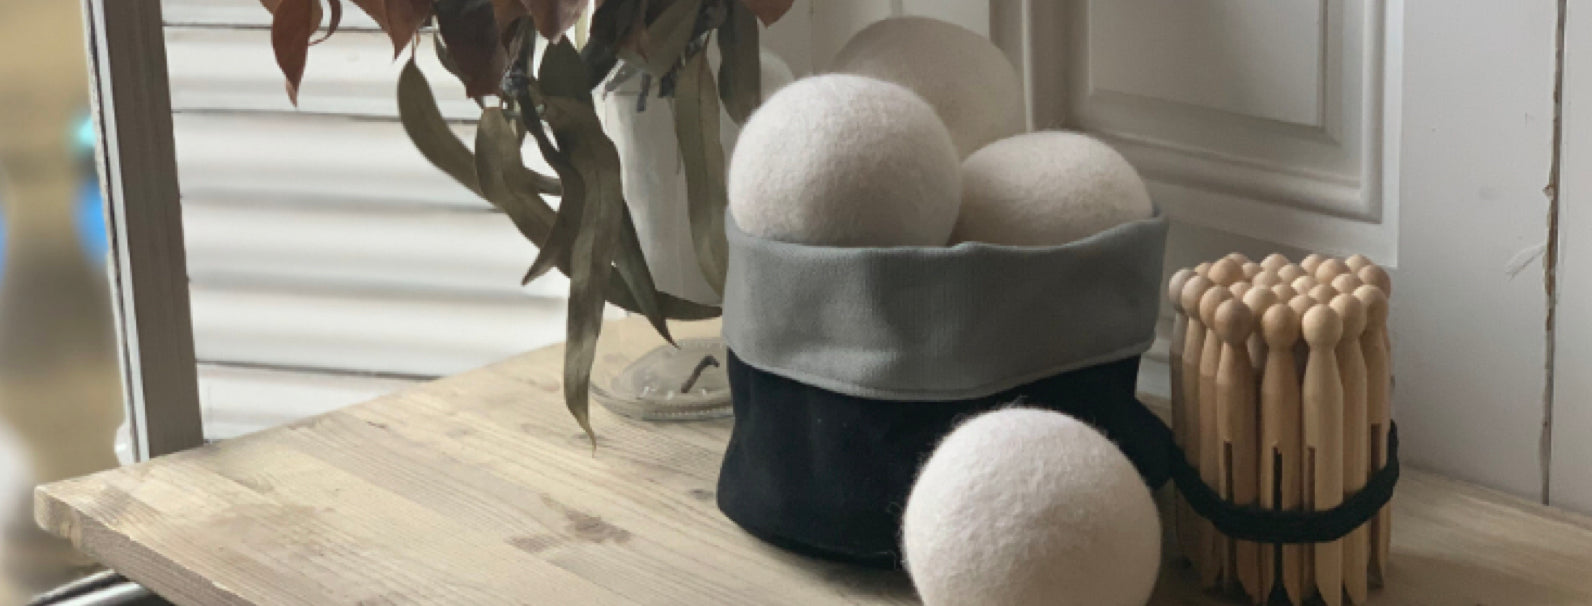 bolas de secado artesanales Home Healthy Home